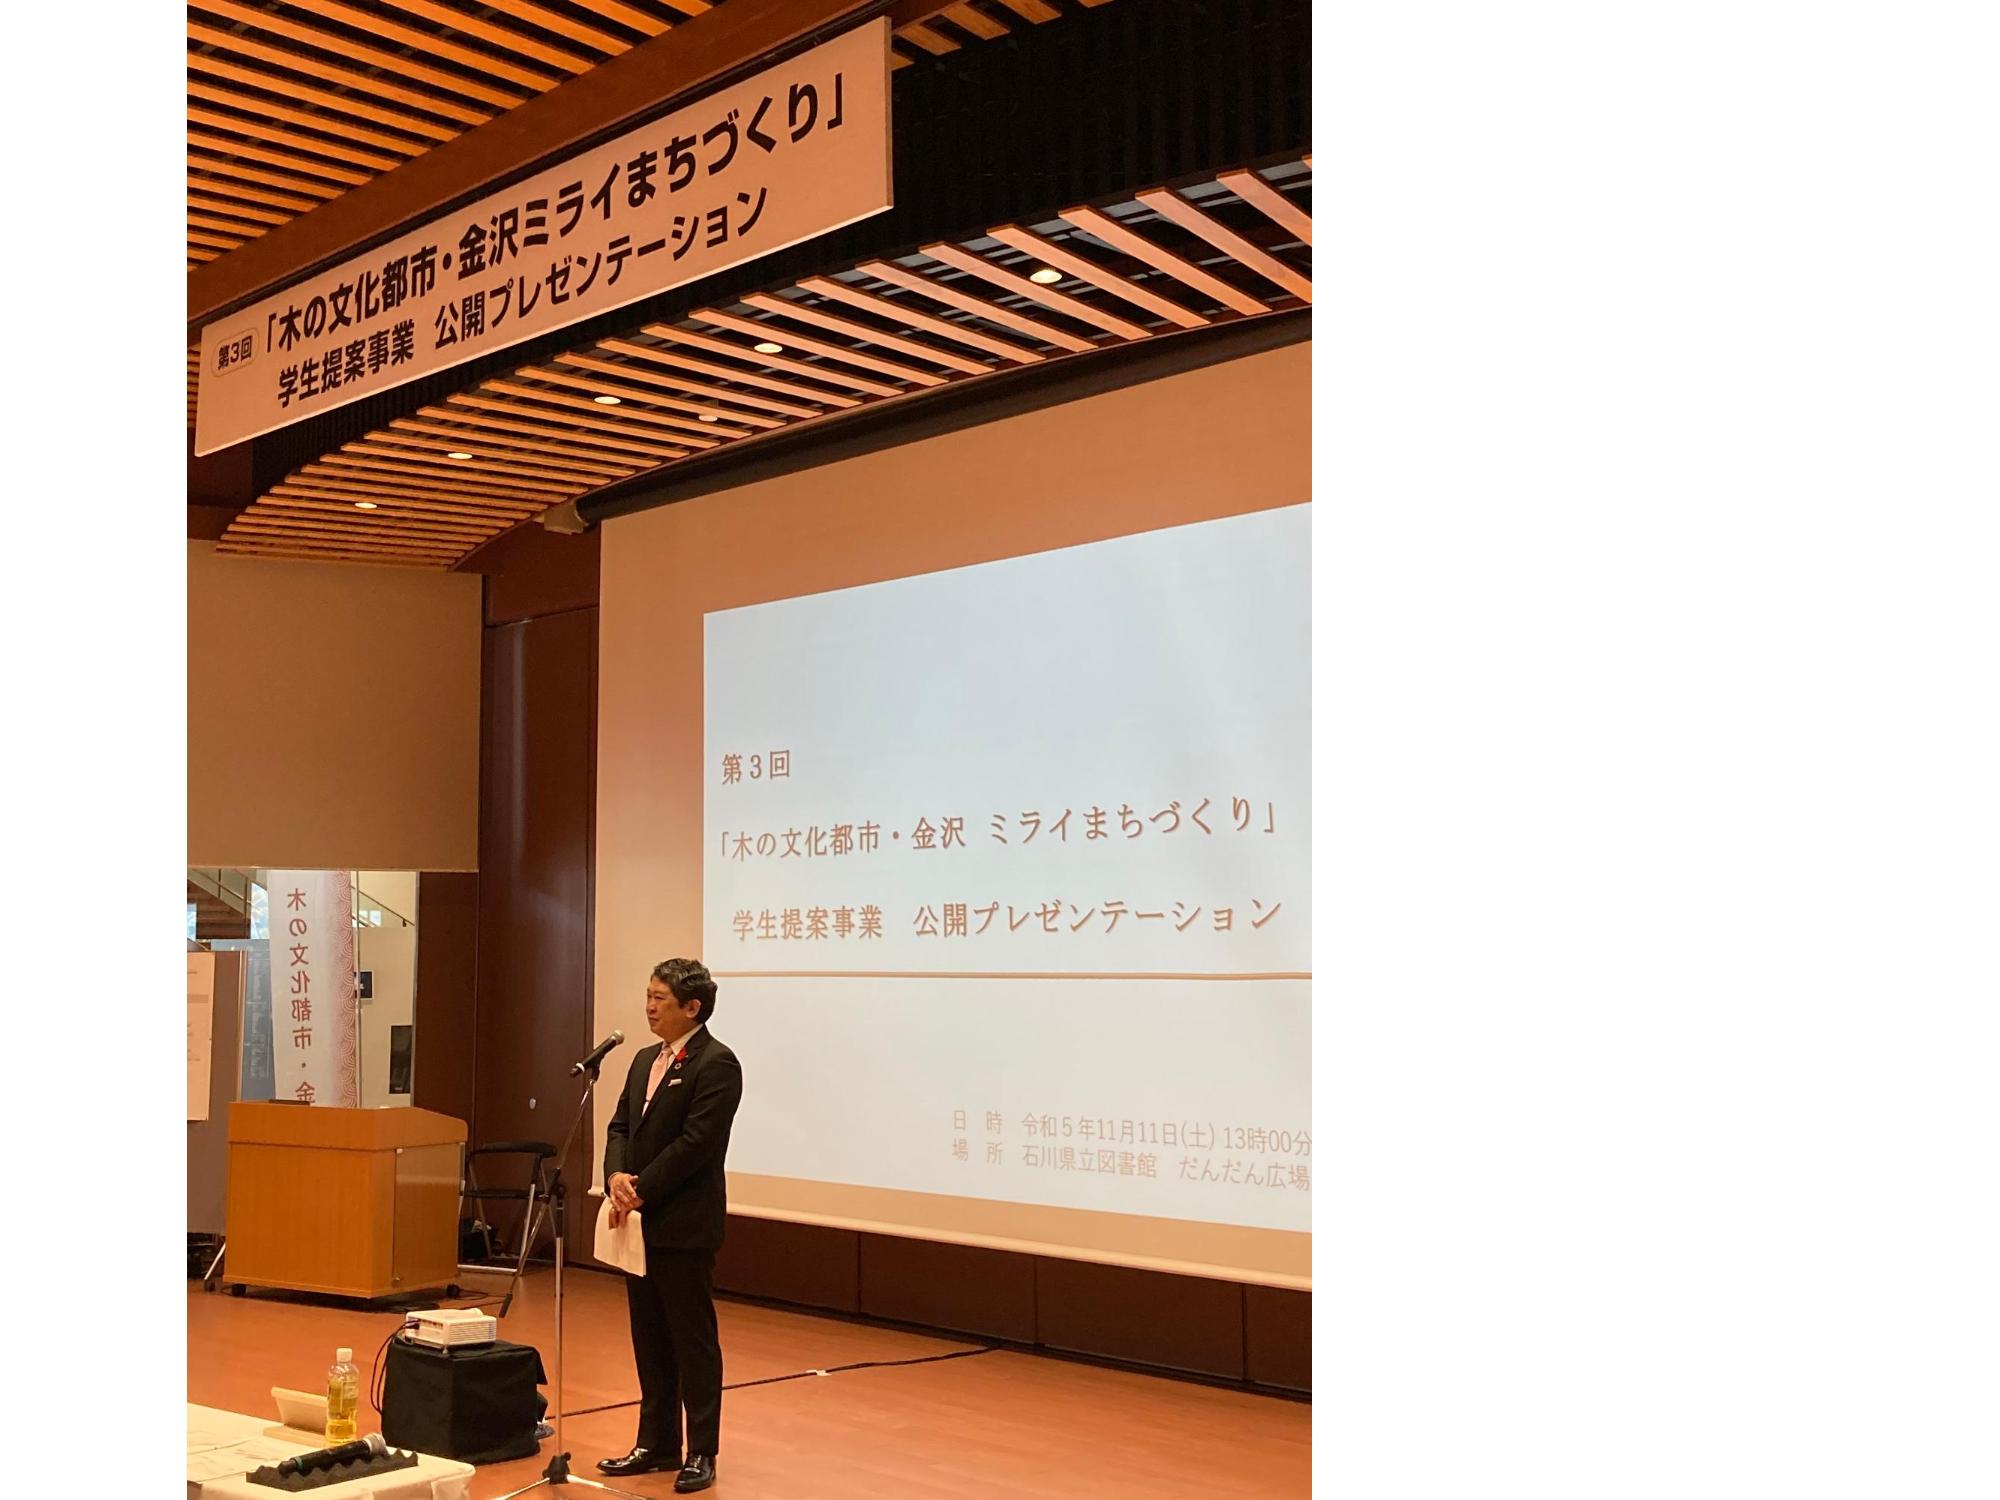 「木の文化都市・金沢ミライまちづくり」学生提案事業公開プレゼンテーション